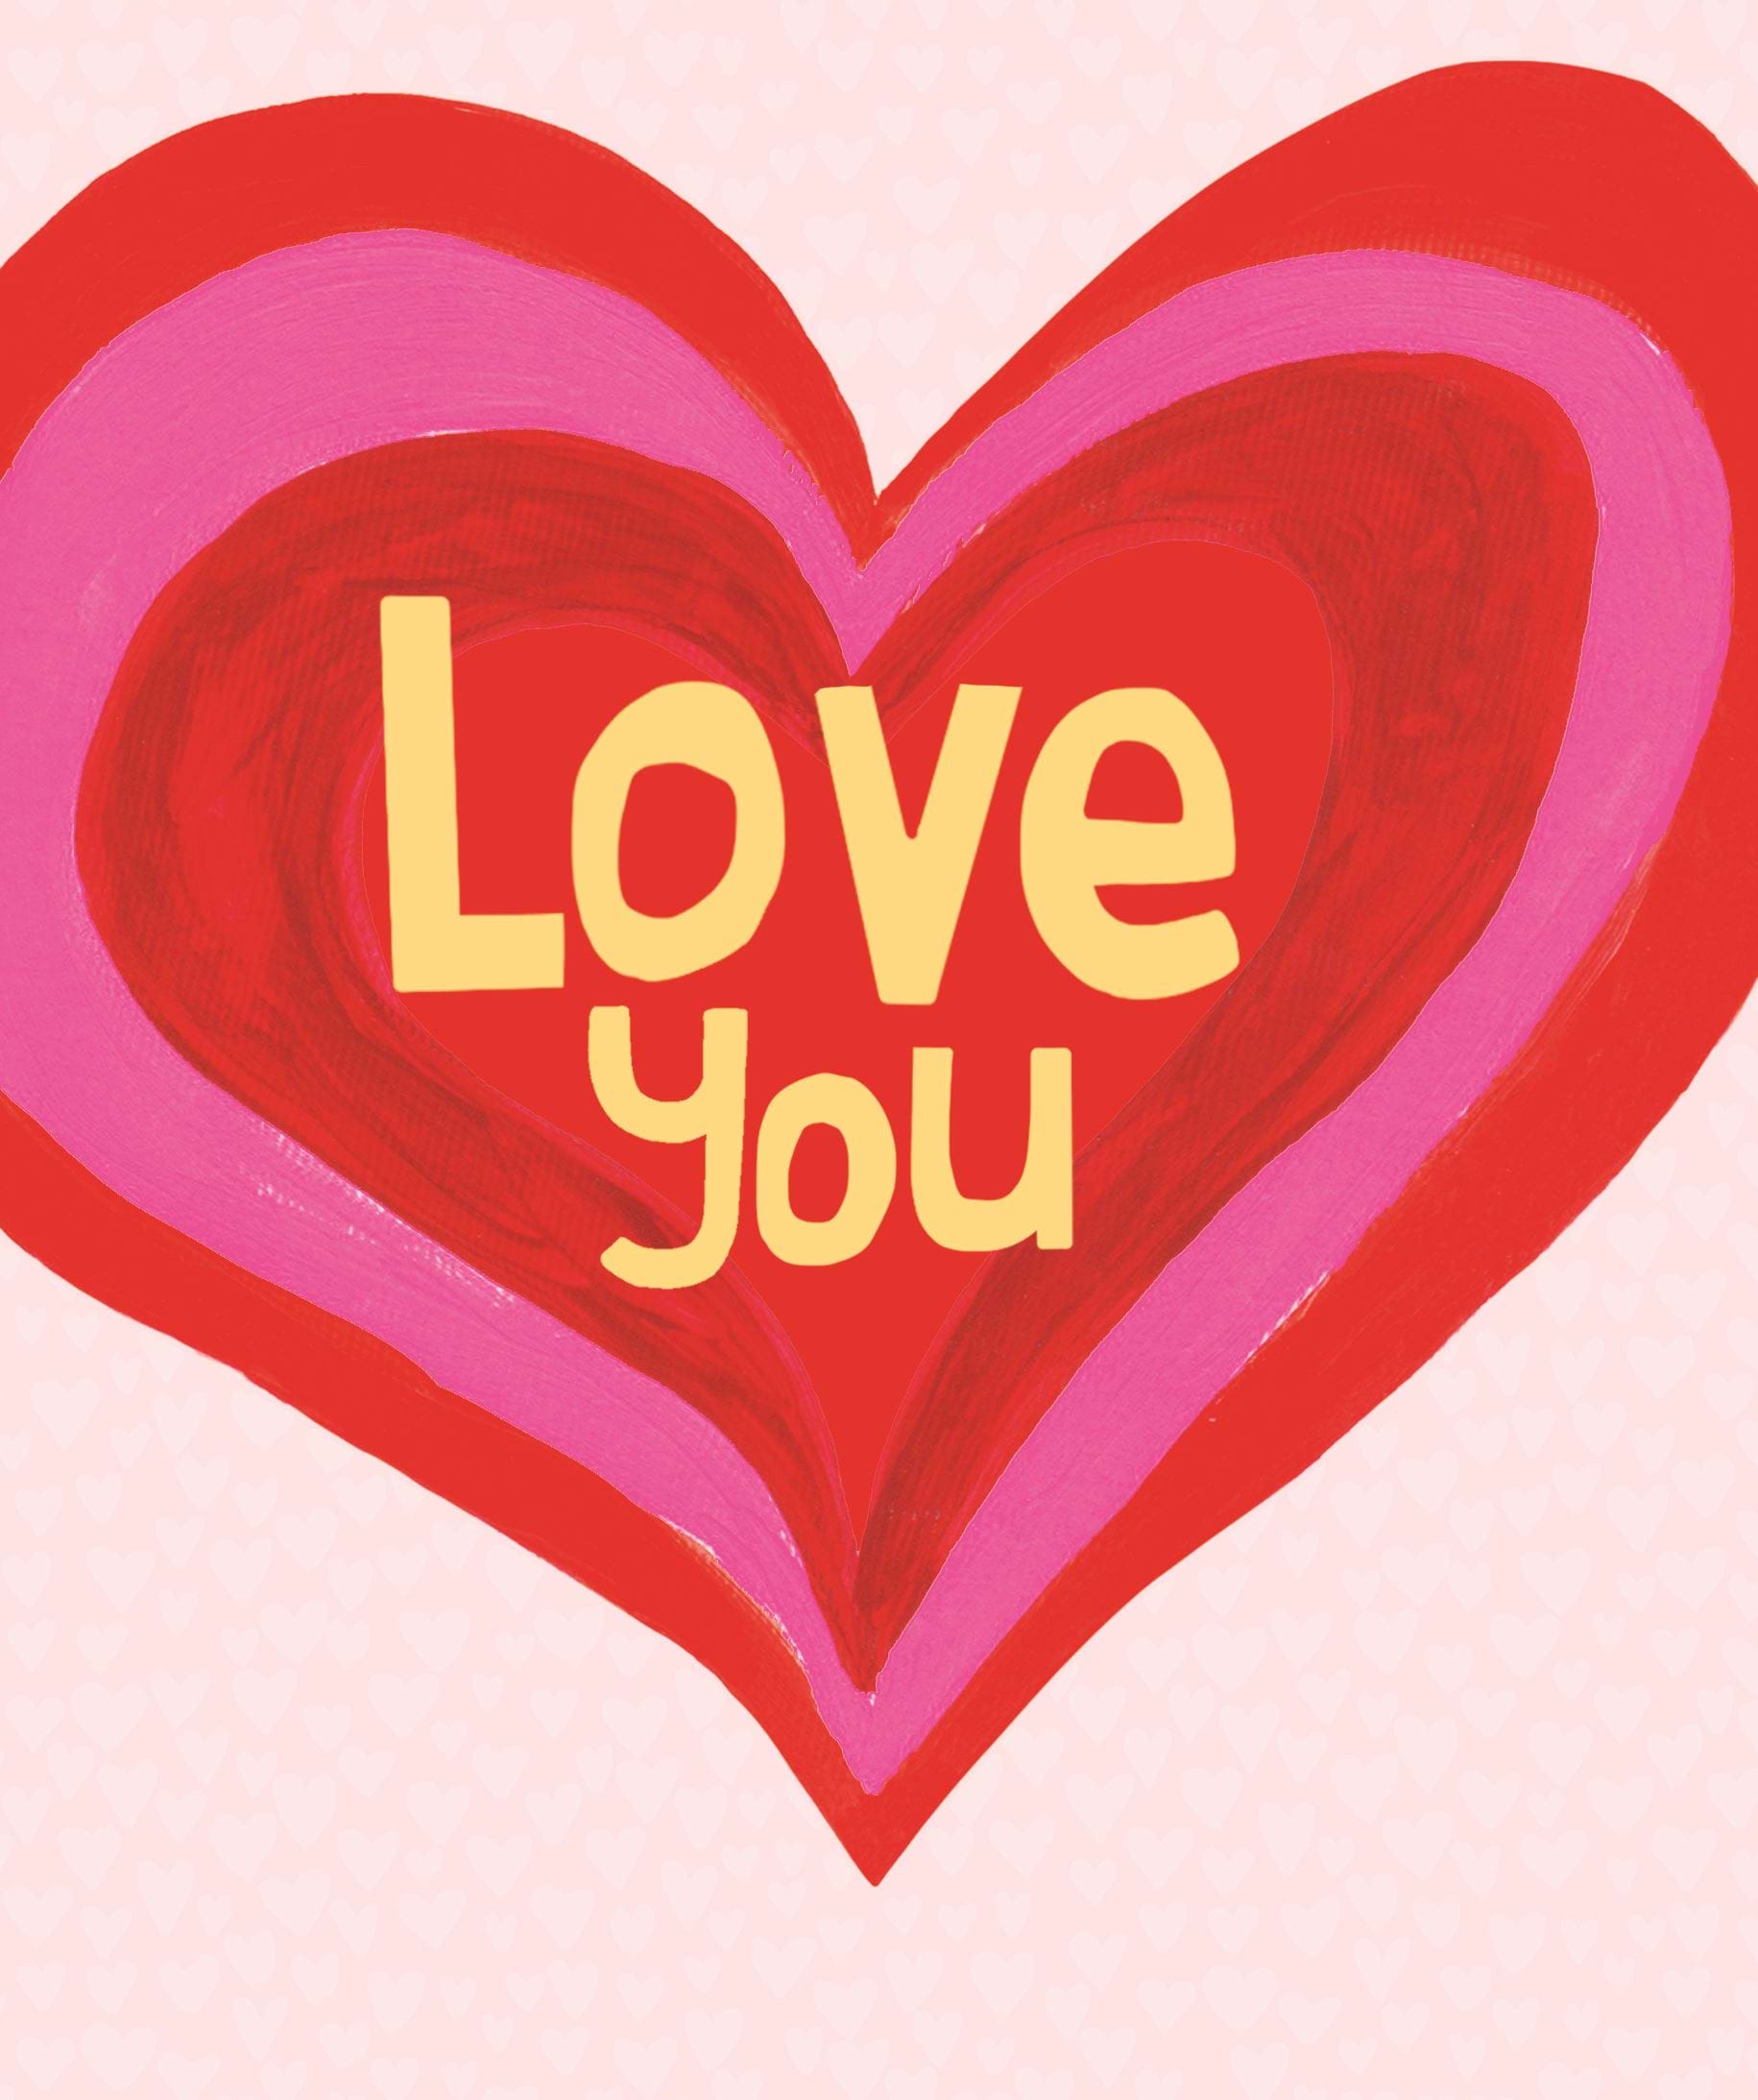 Love Valentine's Day Card